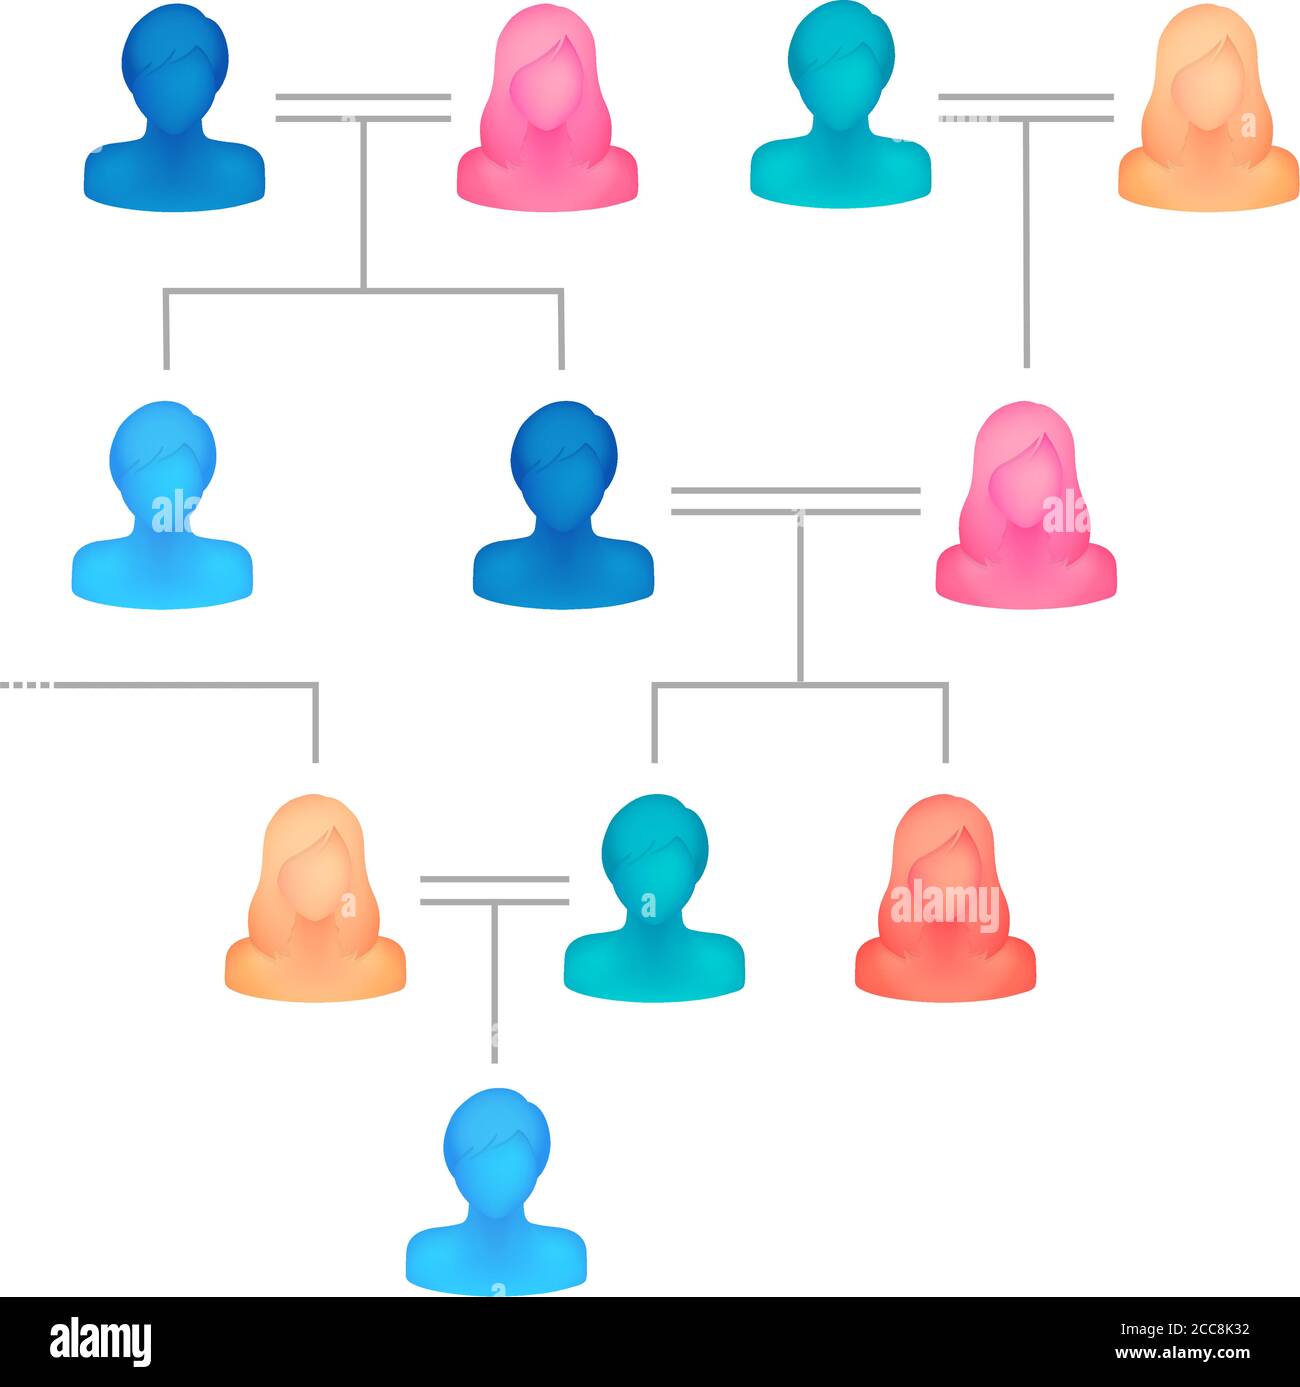 Illustrazione vettoriale dell'albero della famiglia ( persona silhouette senza volto ) Illustrazione Vettoriale